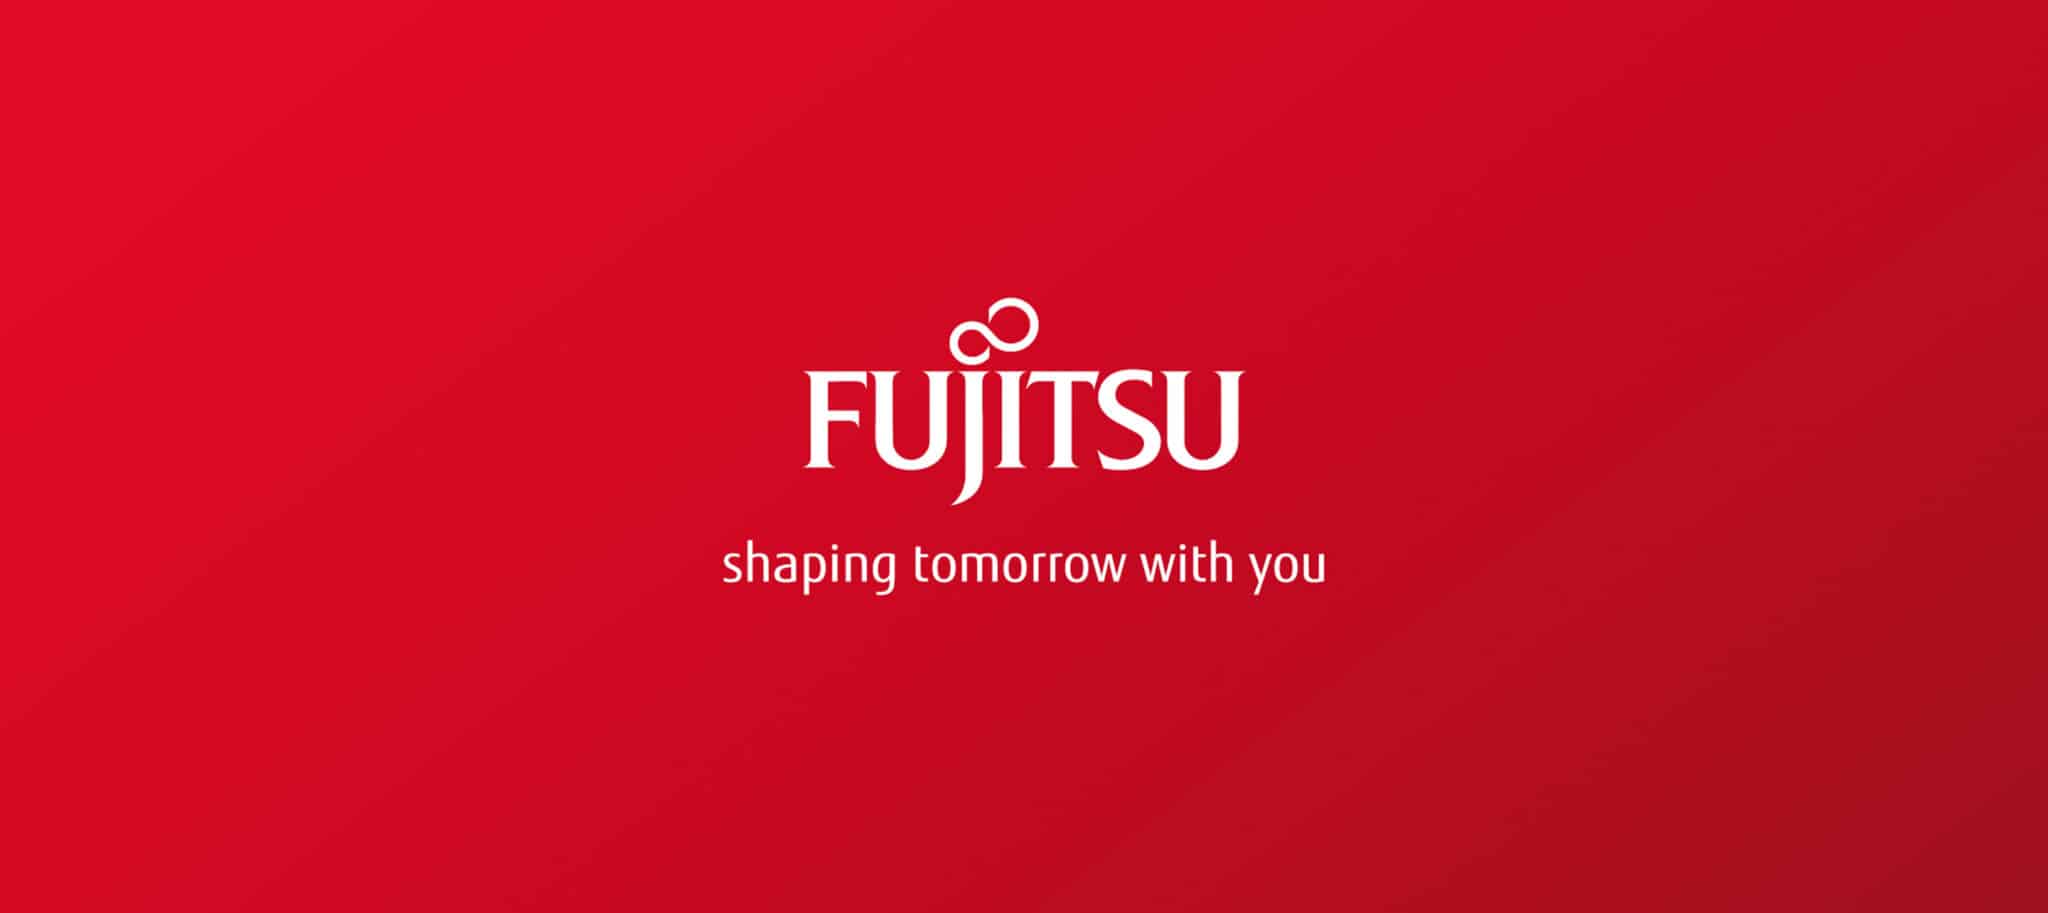 فوجيتسو تعرض تقنيات لتعزيز التحول الرقمي في المنطقة خلال جيتكس 2018